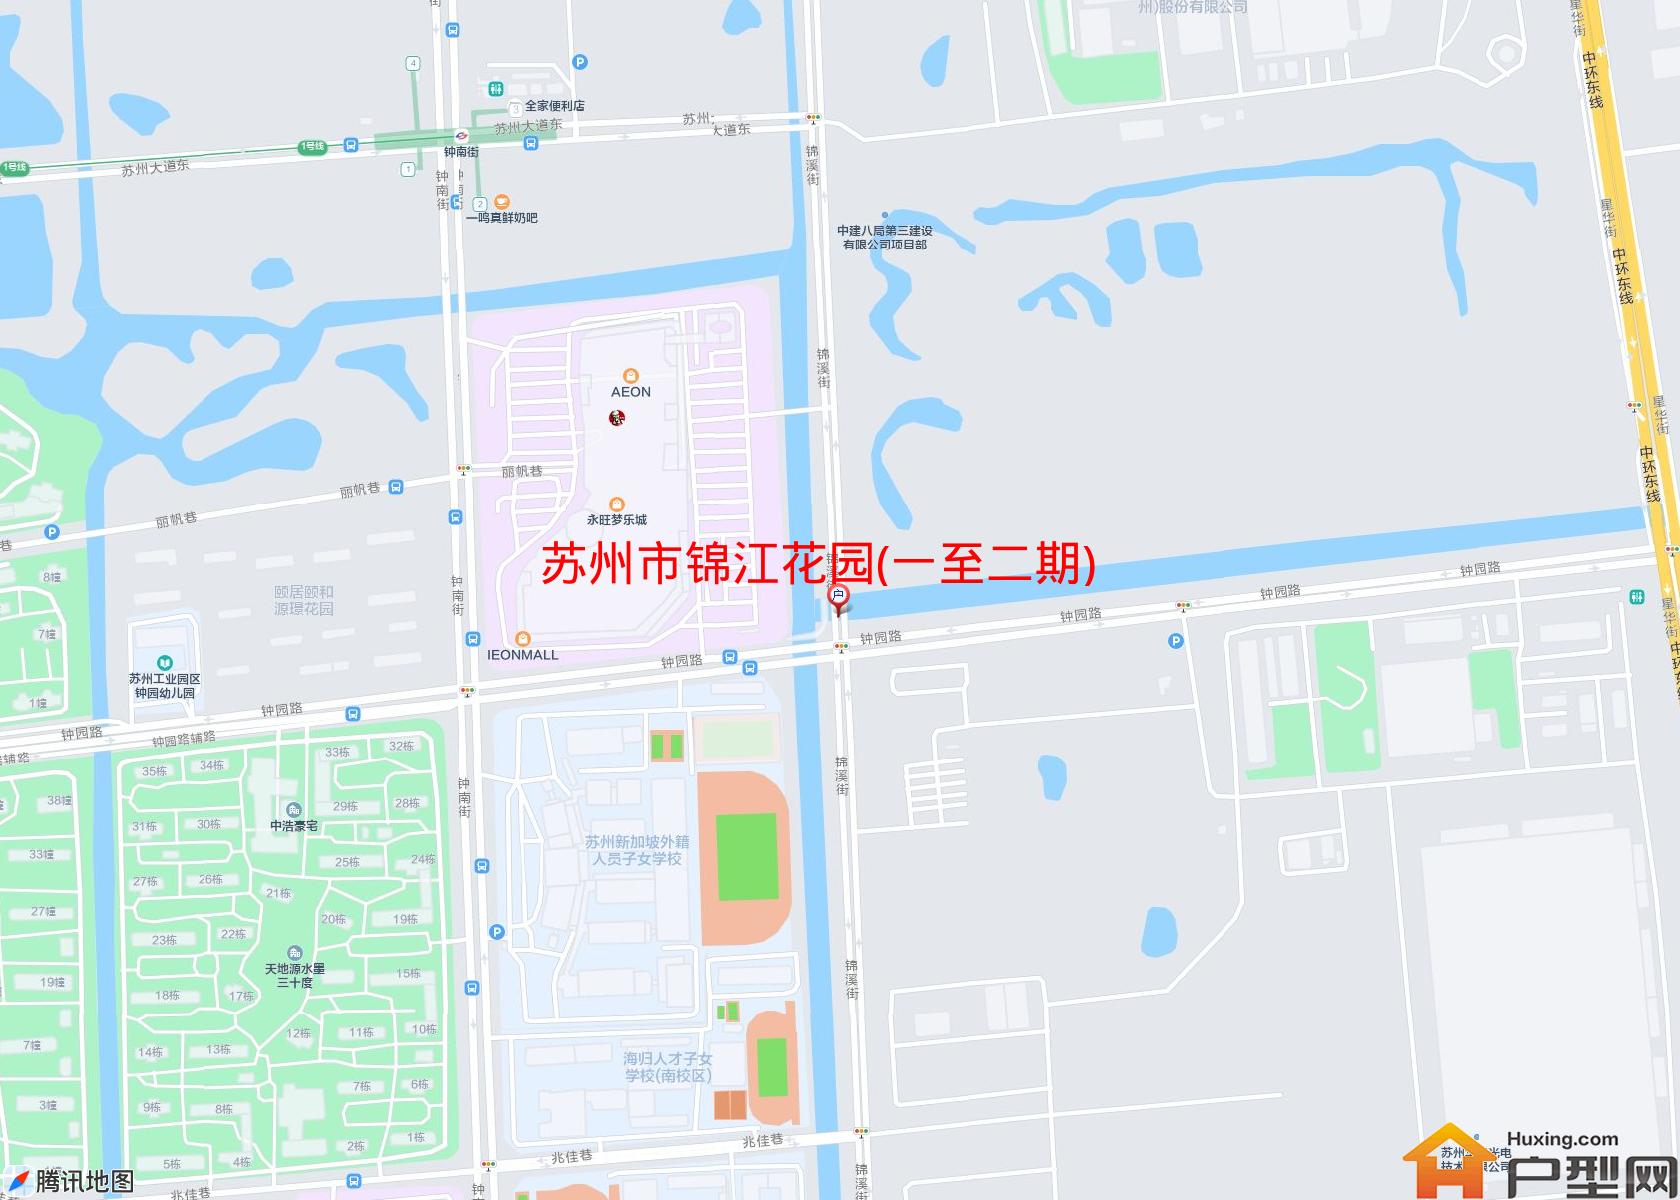 锦江花园(一至二期)小区 - 户型网